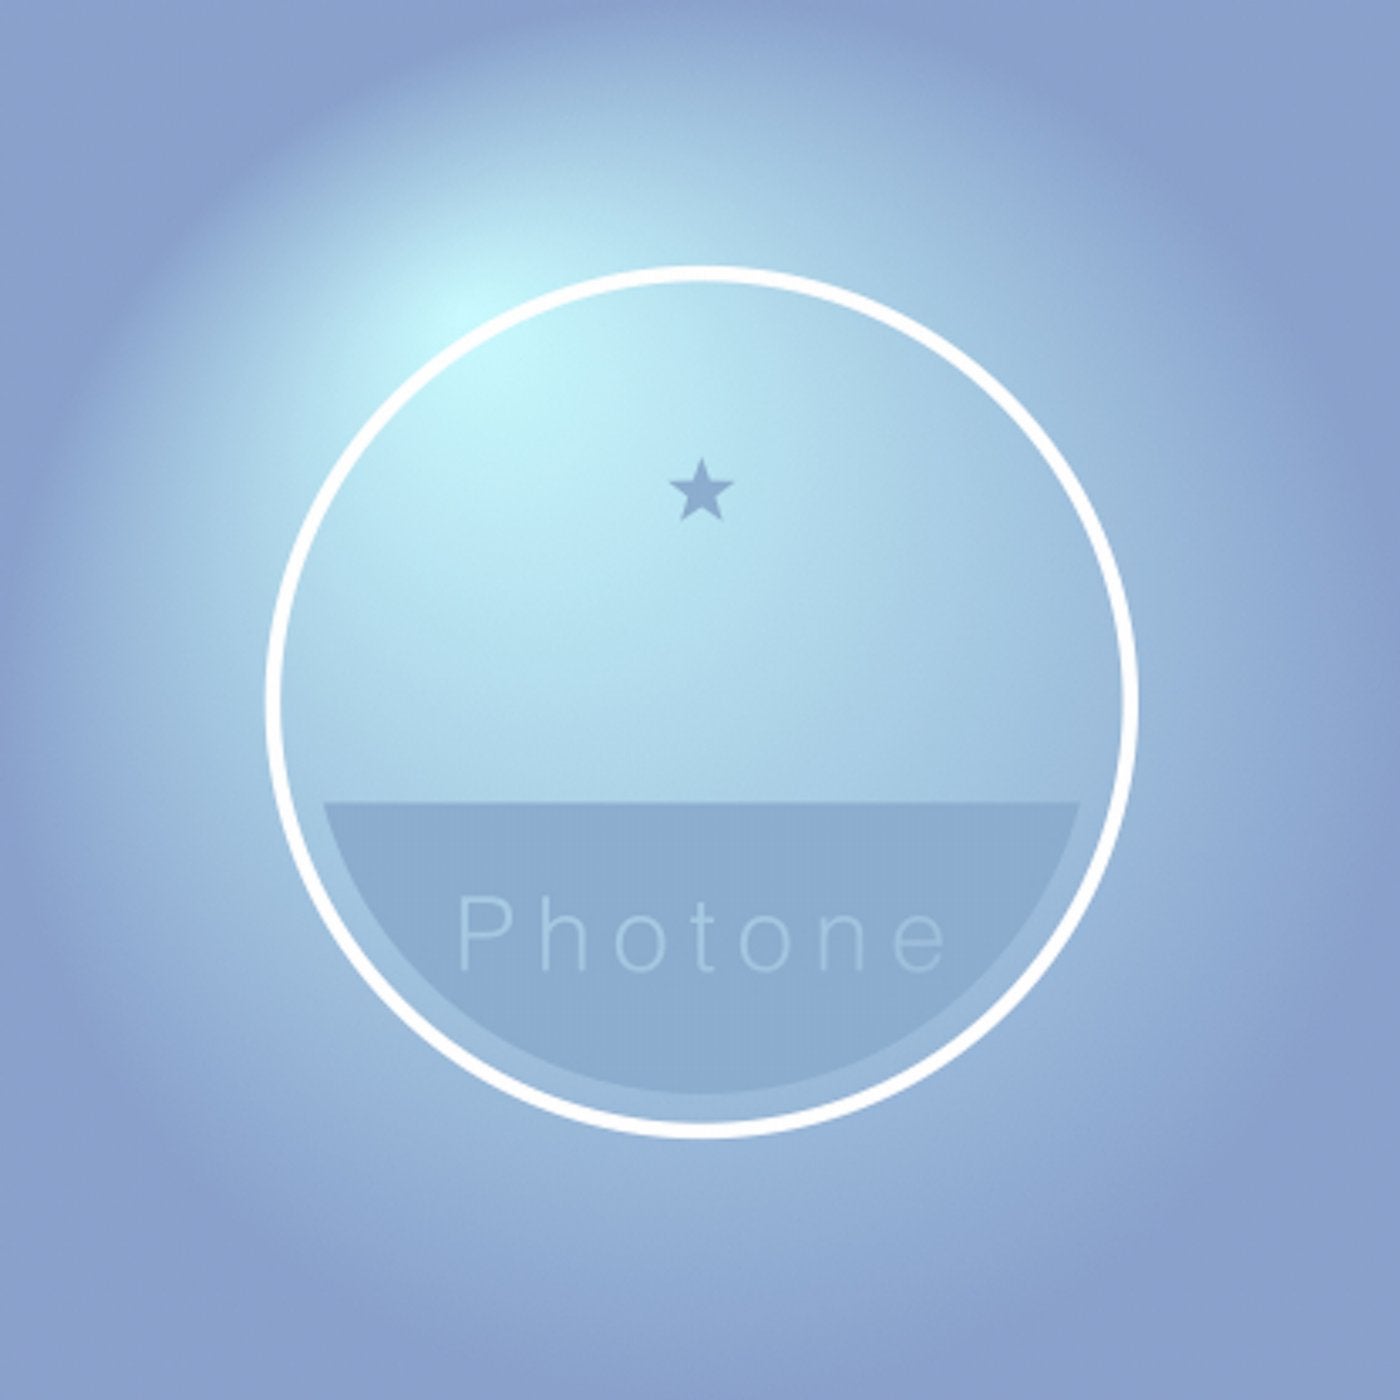 Photone